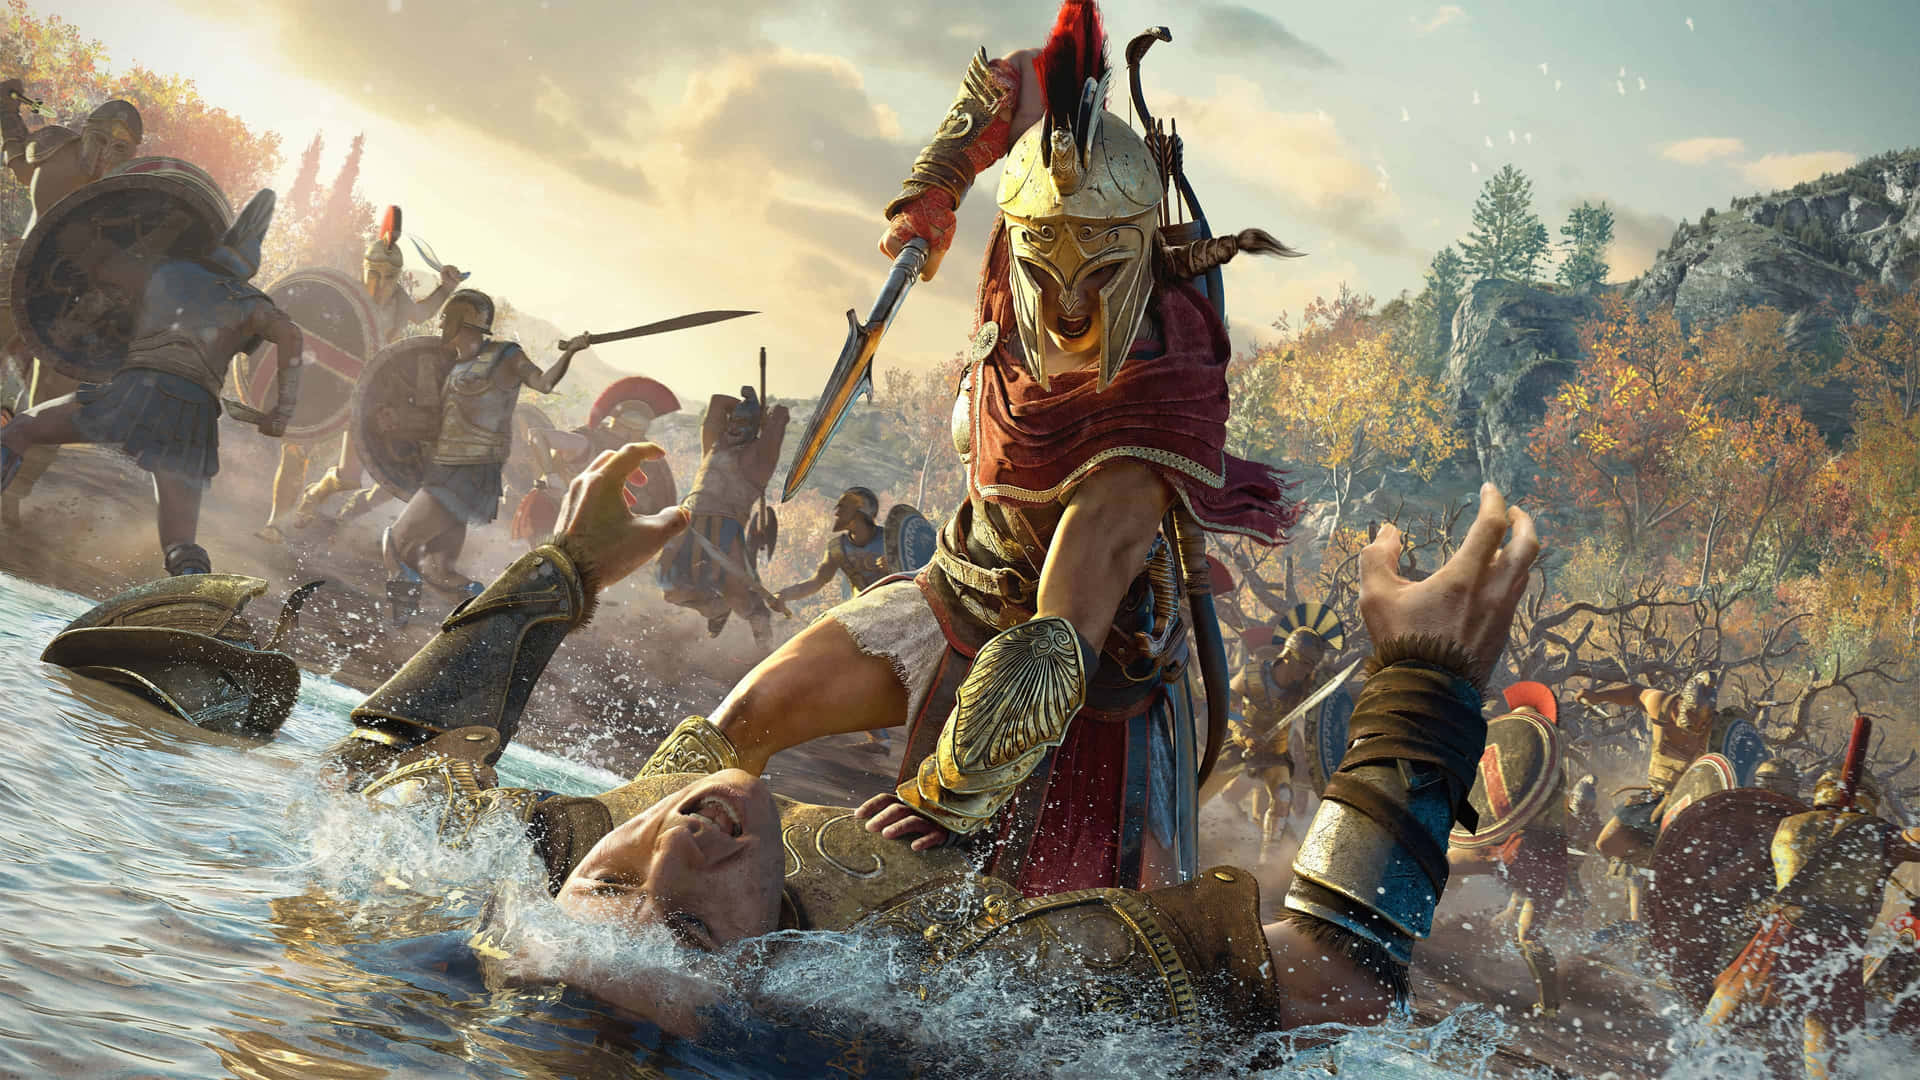 Sumérgeteen La Acción Con Assassin's Creed Odyssey En 4k.